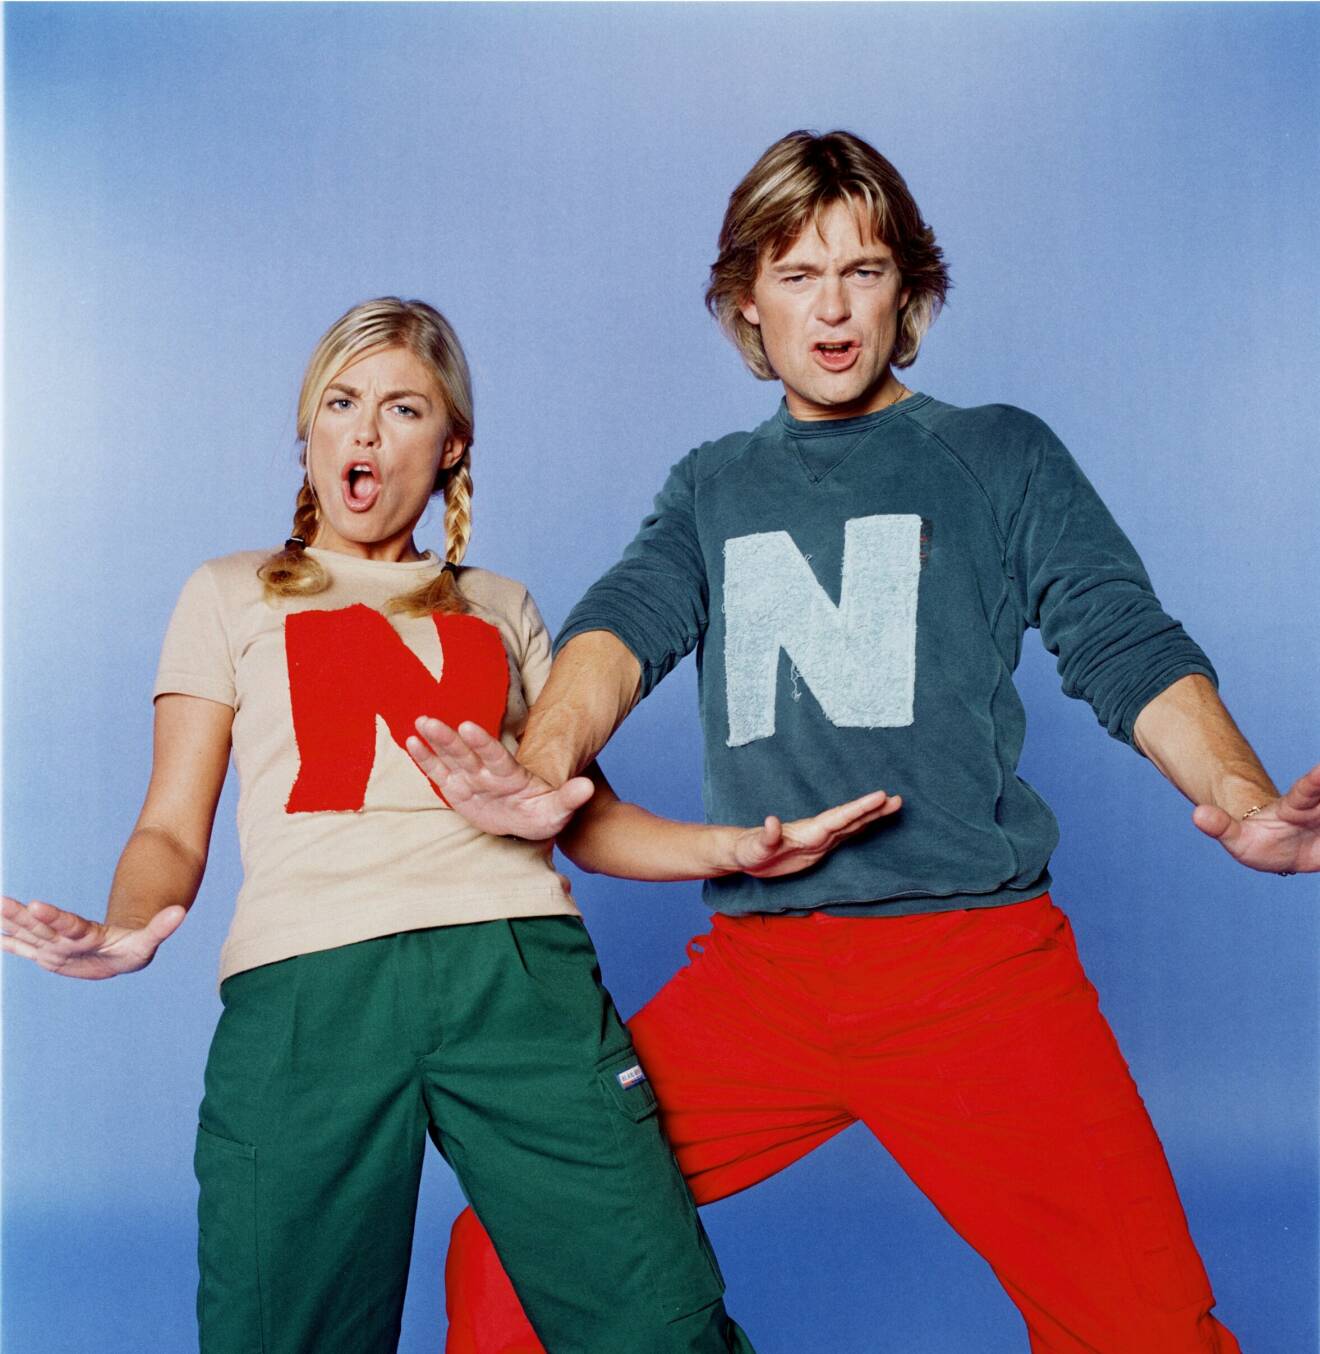 Pernilla och Niclas hade båda tröjor med ett stort emblem av bokstaven ”N” i tv-programmet Nicke &amp; Nilla. Coolt!